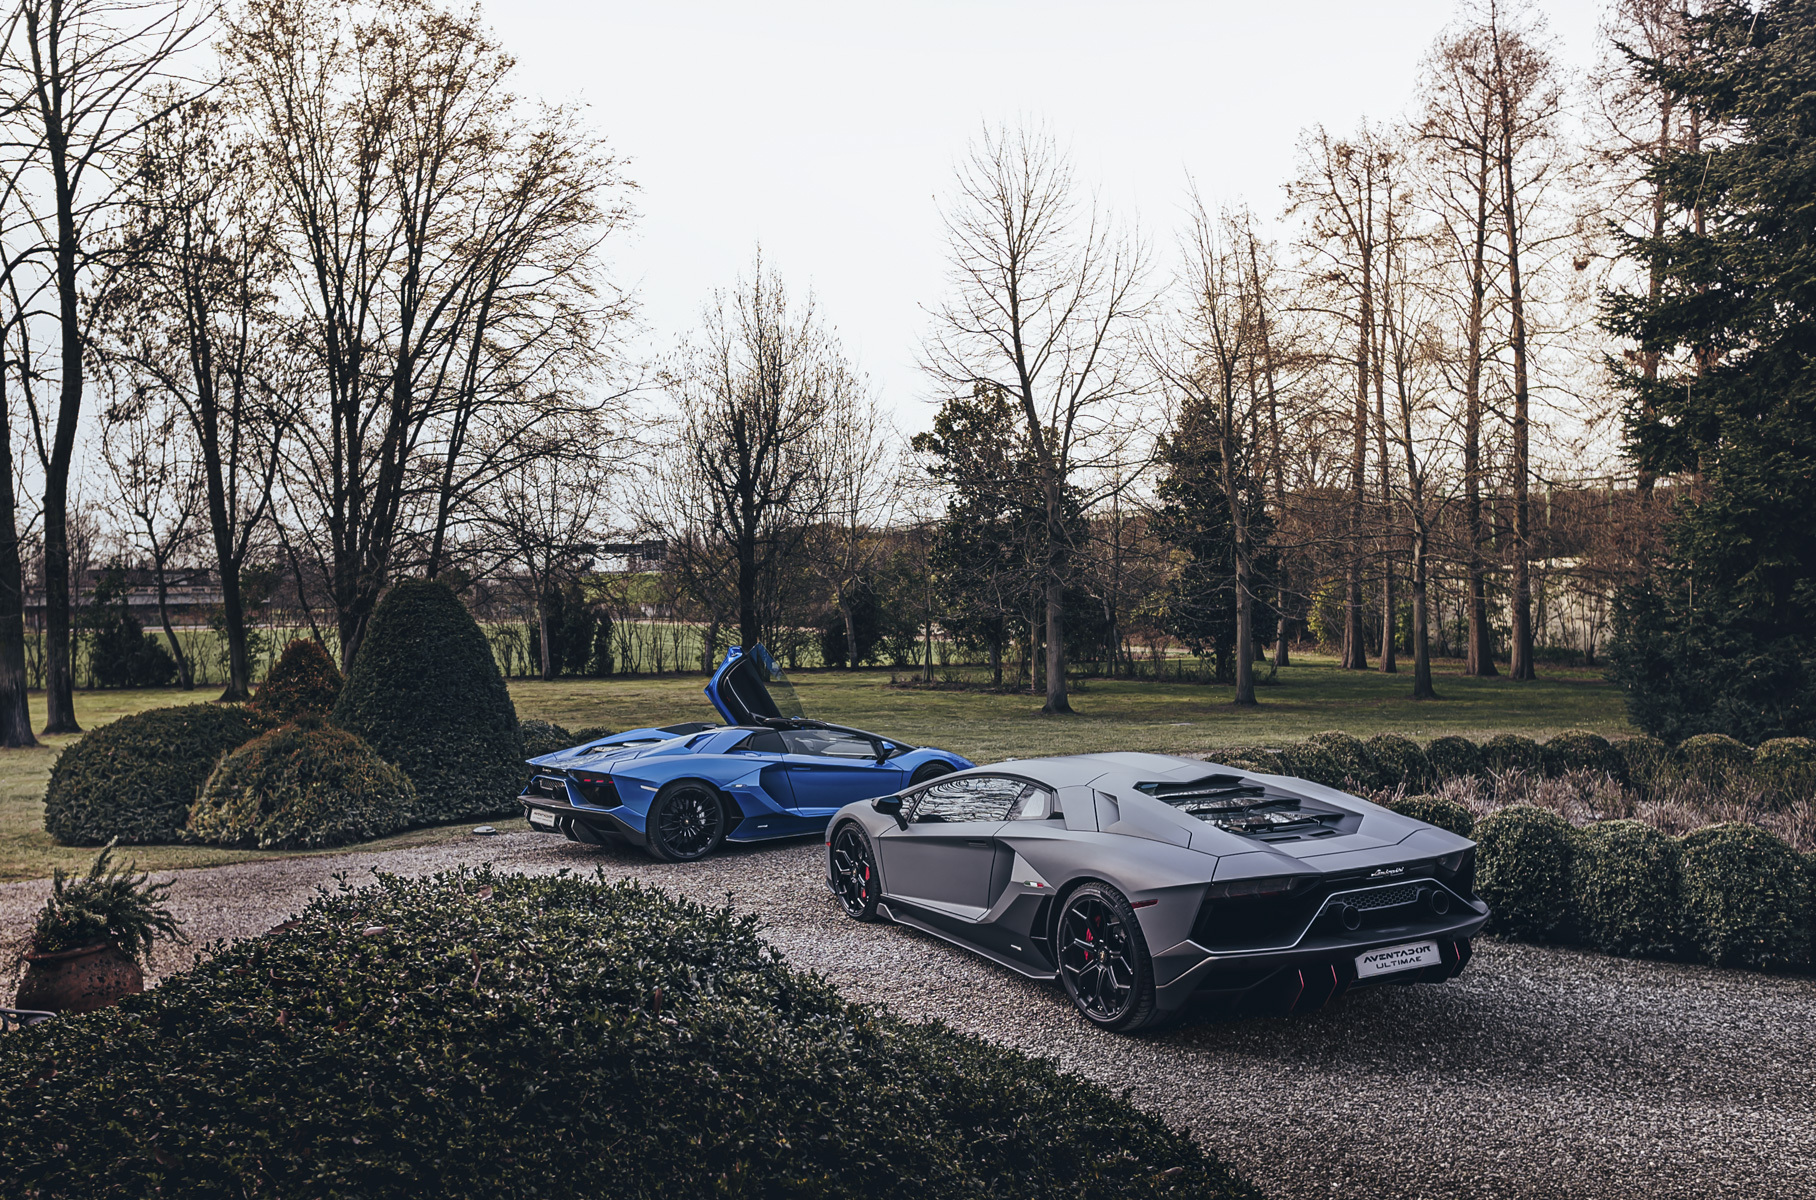 Всего выпущено 600 экземпляров Lamborghini Aventador LP 780-4 Ultimae: 350 купе и 250 родстеров. Последним автомобилем в истории модели стала именно закрытая двухдверка.